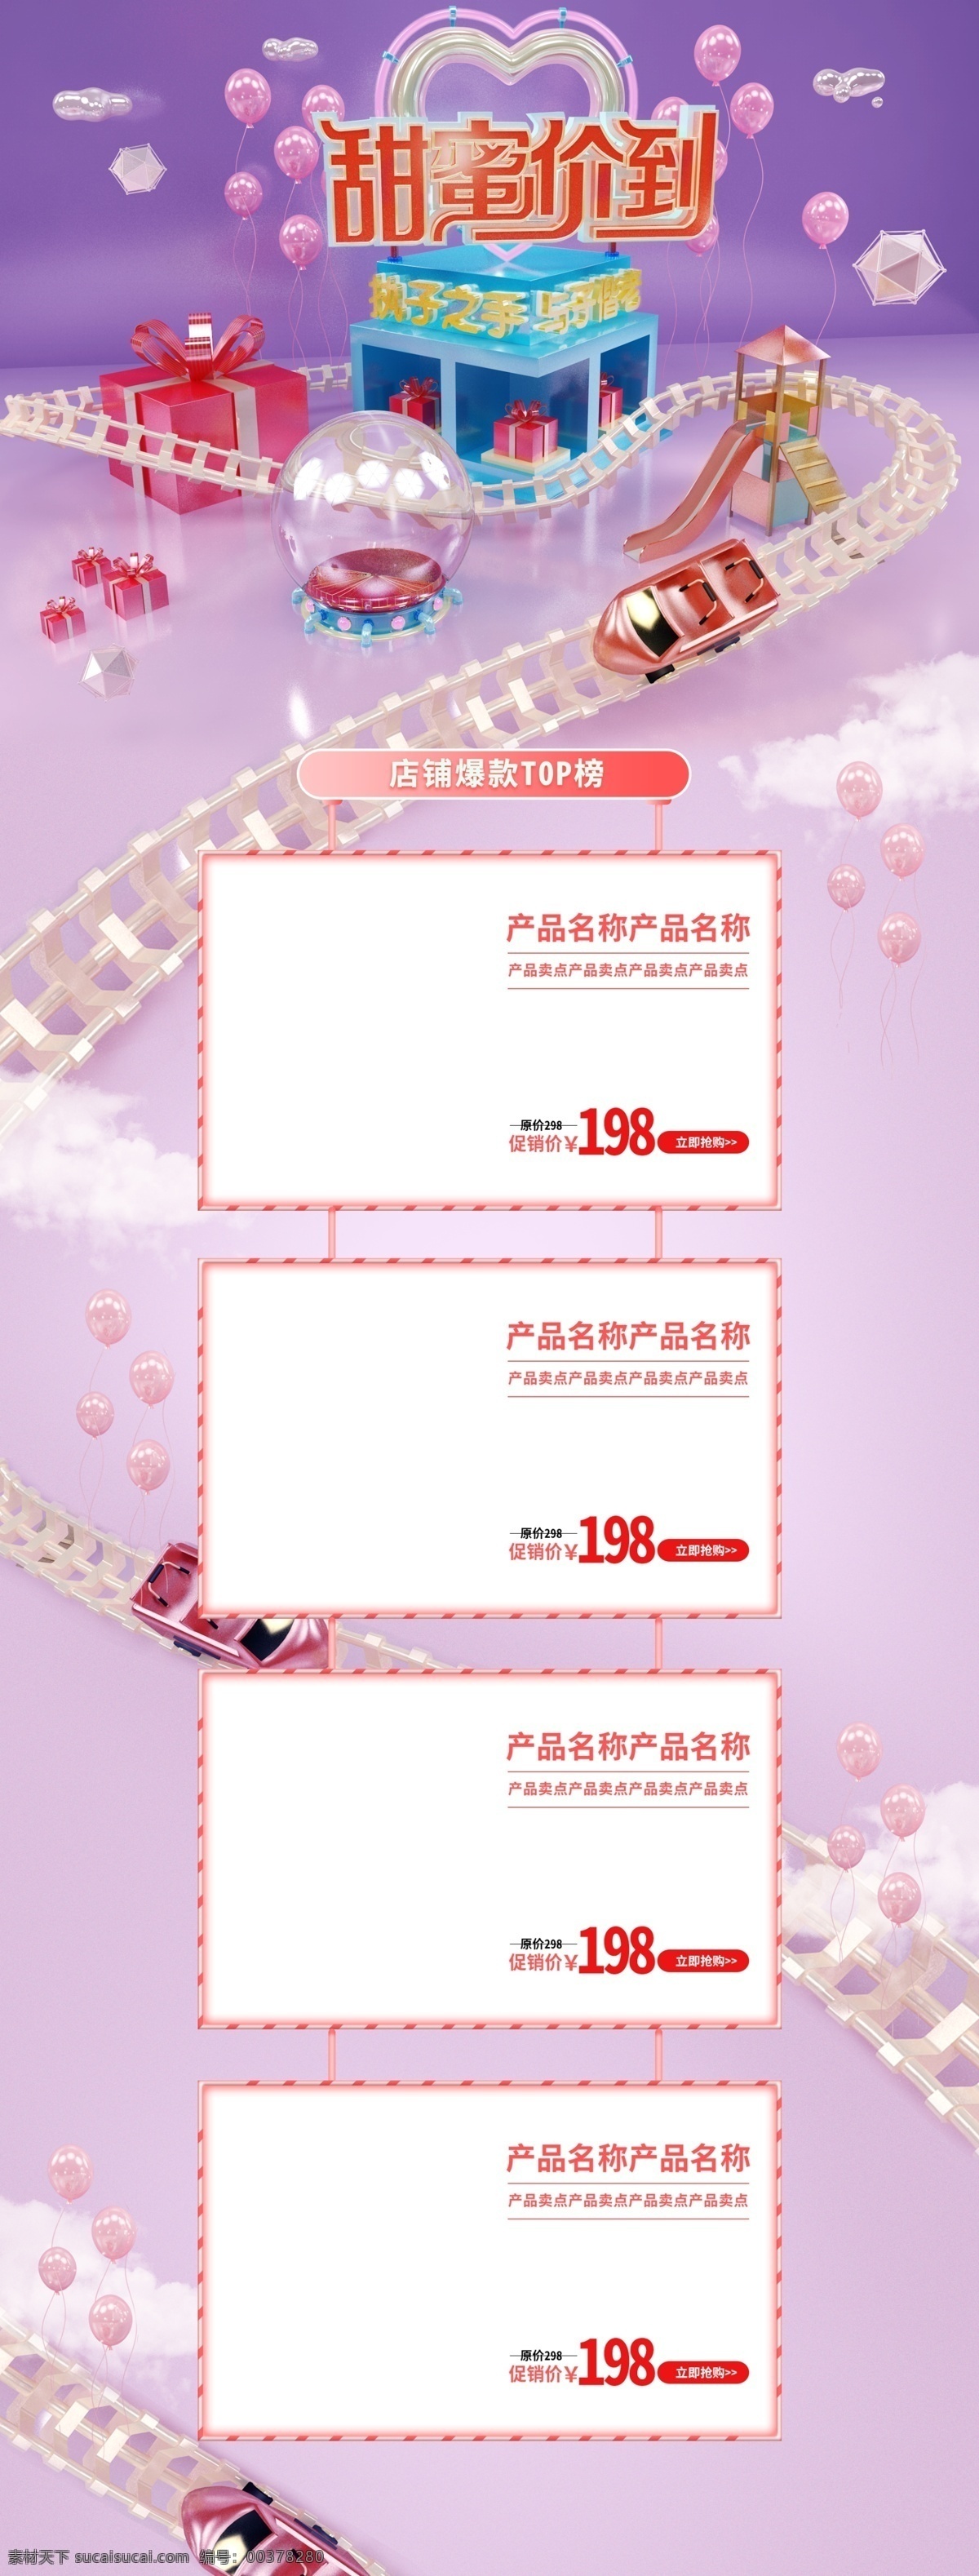 拥抱 情人节 快乐 活动 首页 模板 拥抱情人节 情人节快乐 爱心气球 紫 粉色 浪漫 电商 页面